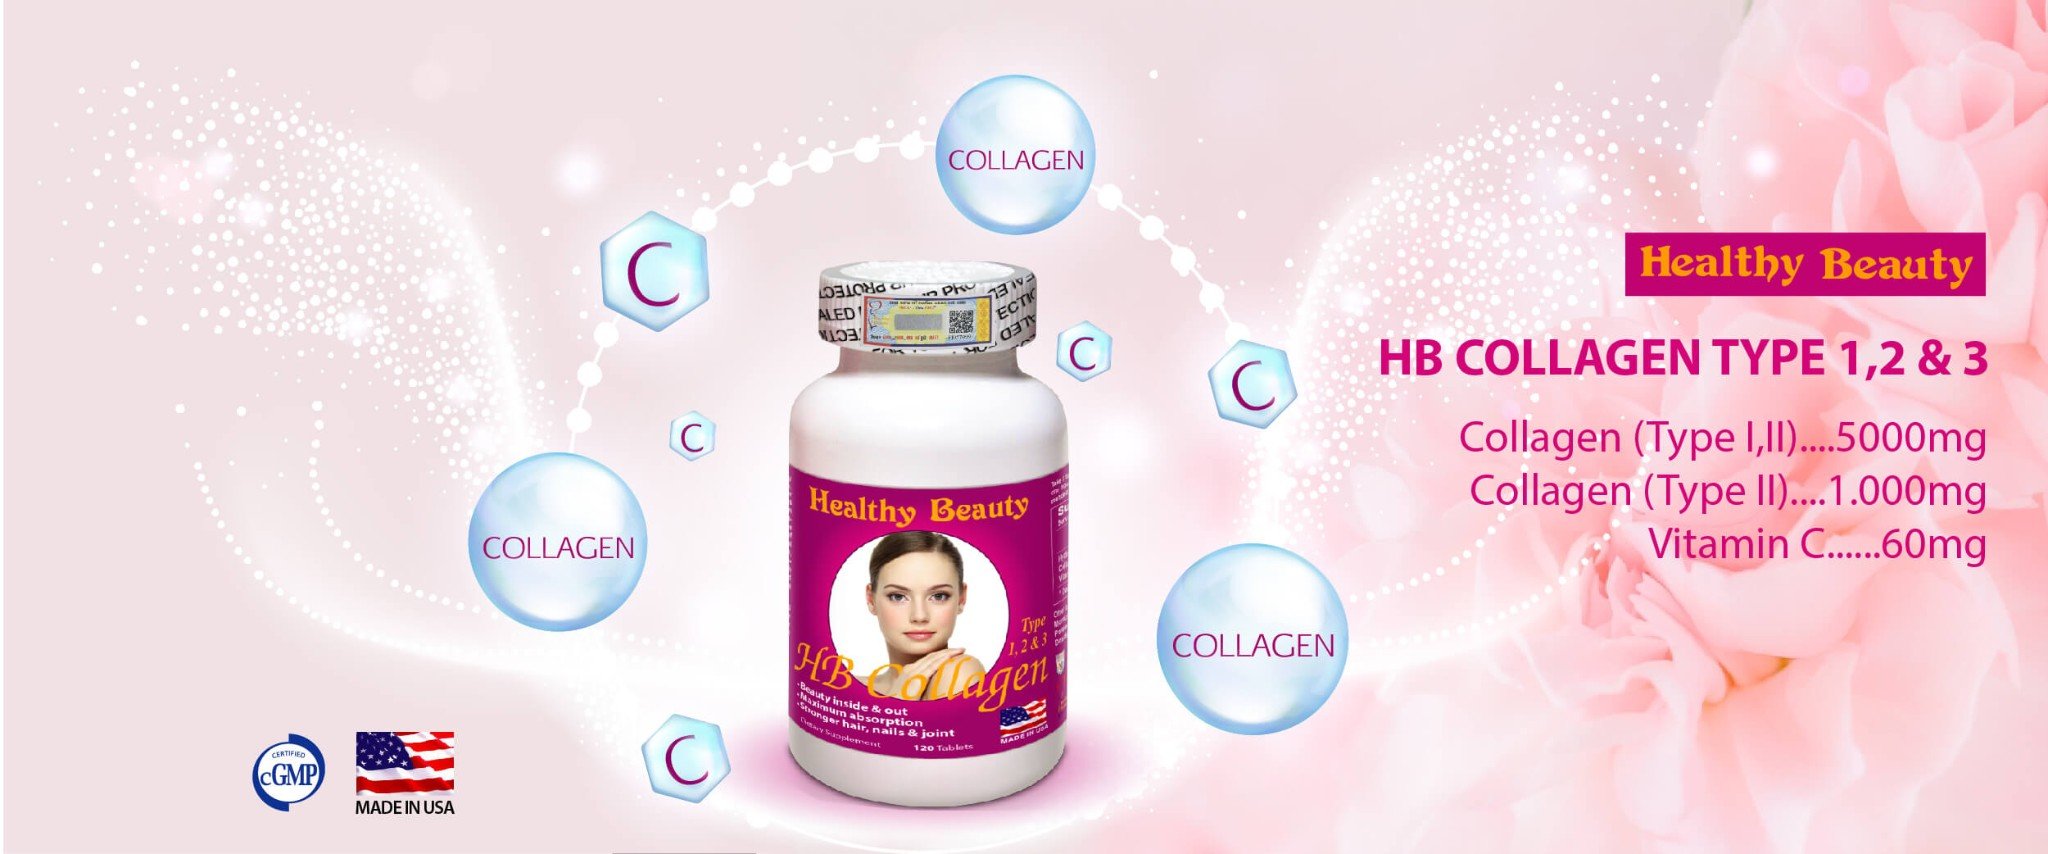 HB Collagen Type 1,2,3 banner